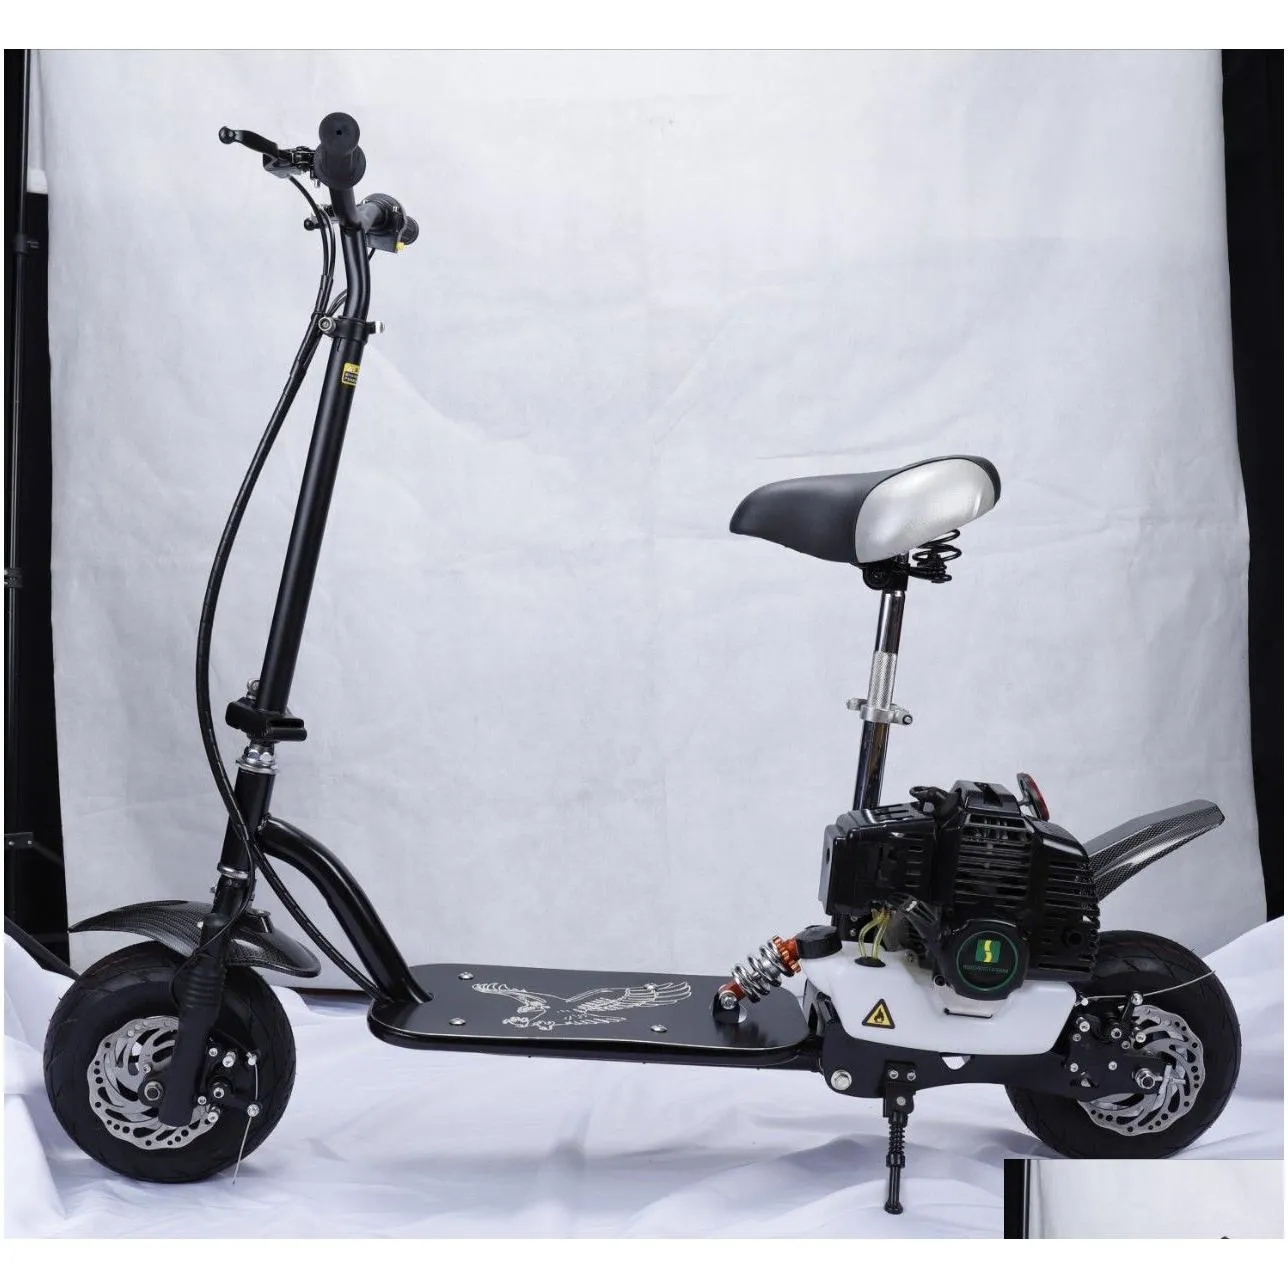 2 stroke 49cc atv small scooter personalized mini moped pure gasoline